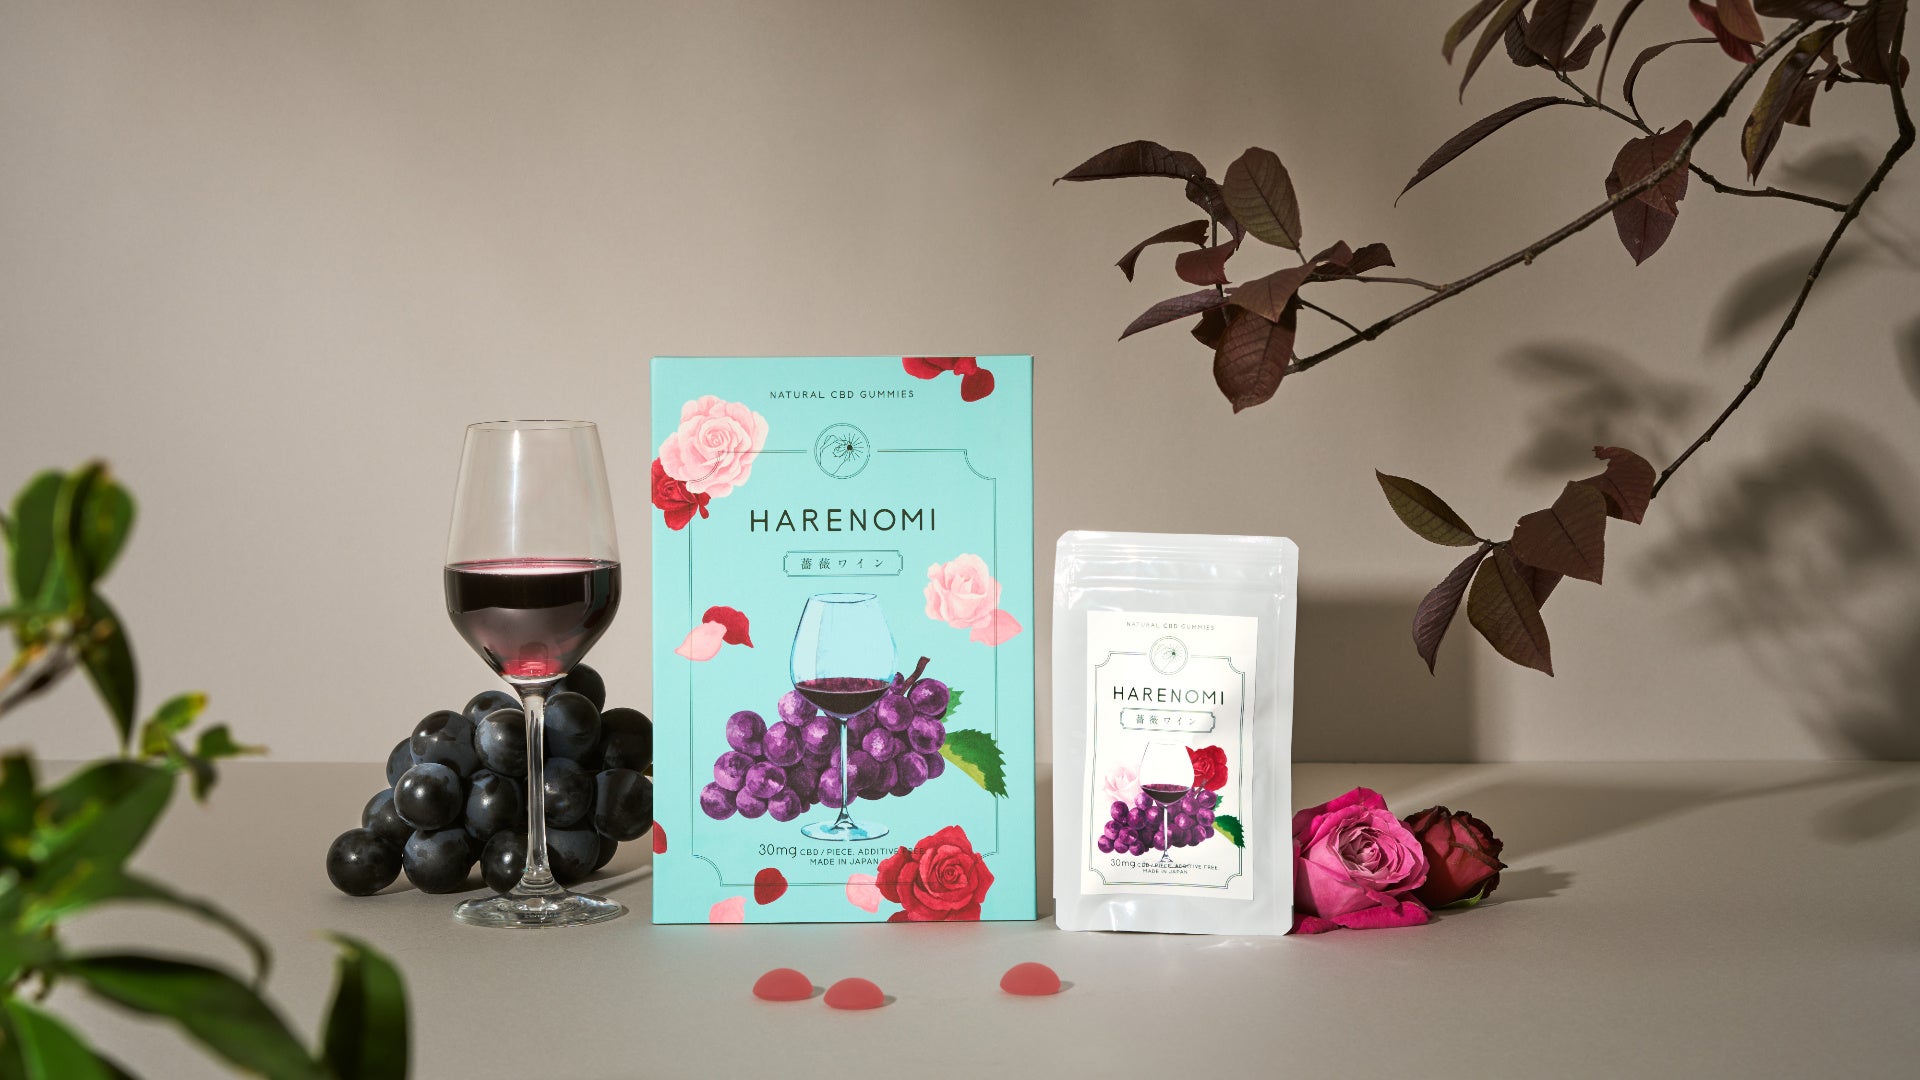 3日間で1.2万粒売れたCBDグミ「HARENOMI」新フレーバー「バラワイン味」をAmazonで先行発売開始。ミシュラン星付きレストラン愛用の食用バラを睡眠サプリに